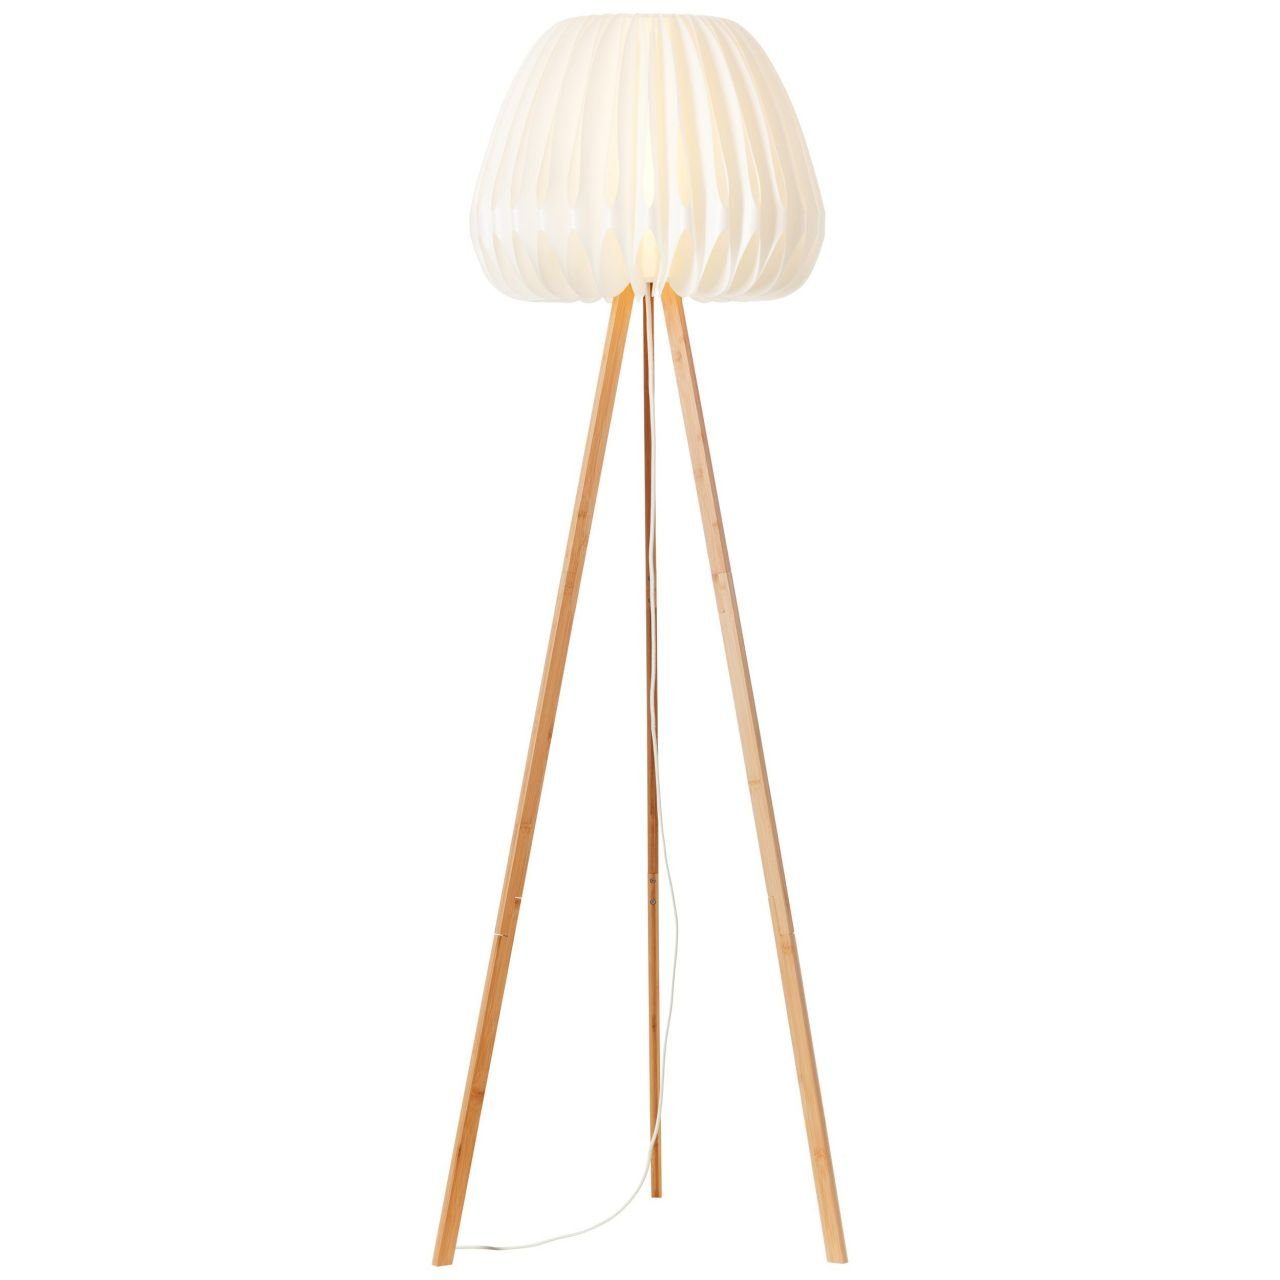 Brilliant Stehlampe Inna, Lampe, holz hell/weiß, Inna Standleuchte, dreibeinig Bambus/Kunststoff